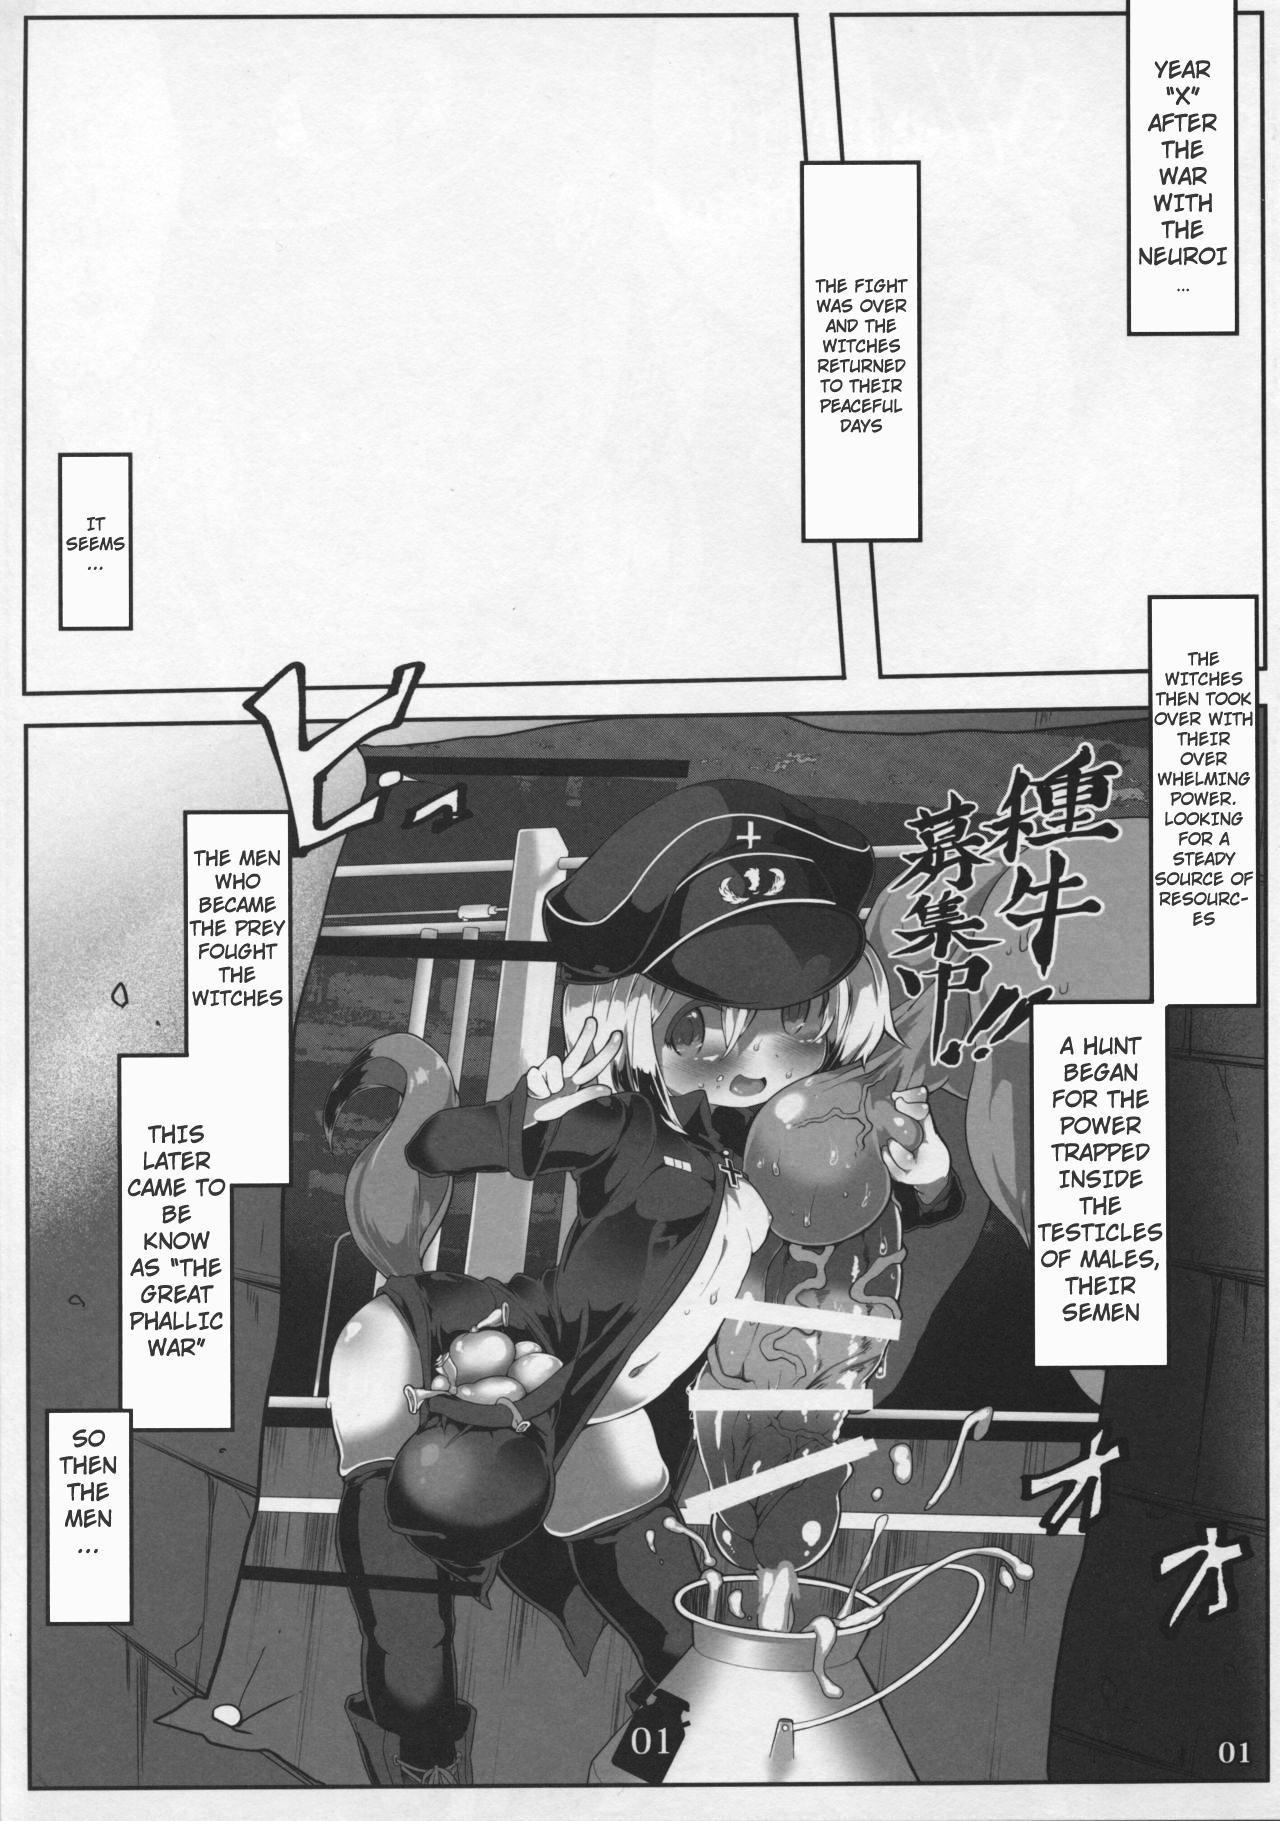 Peituda Tanoshii Seieki Bokujou - Strike witches Hiddencam - Page 3